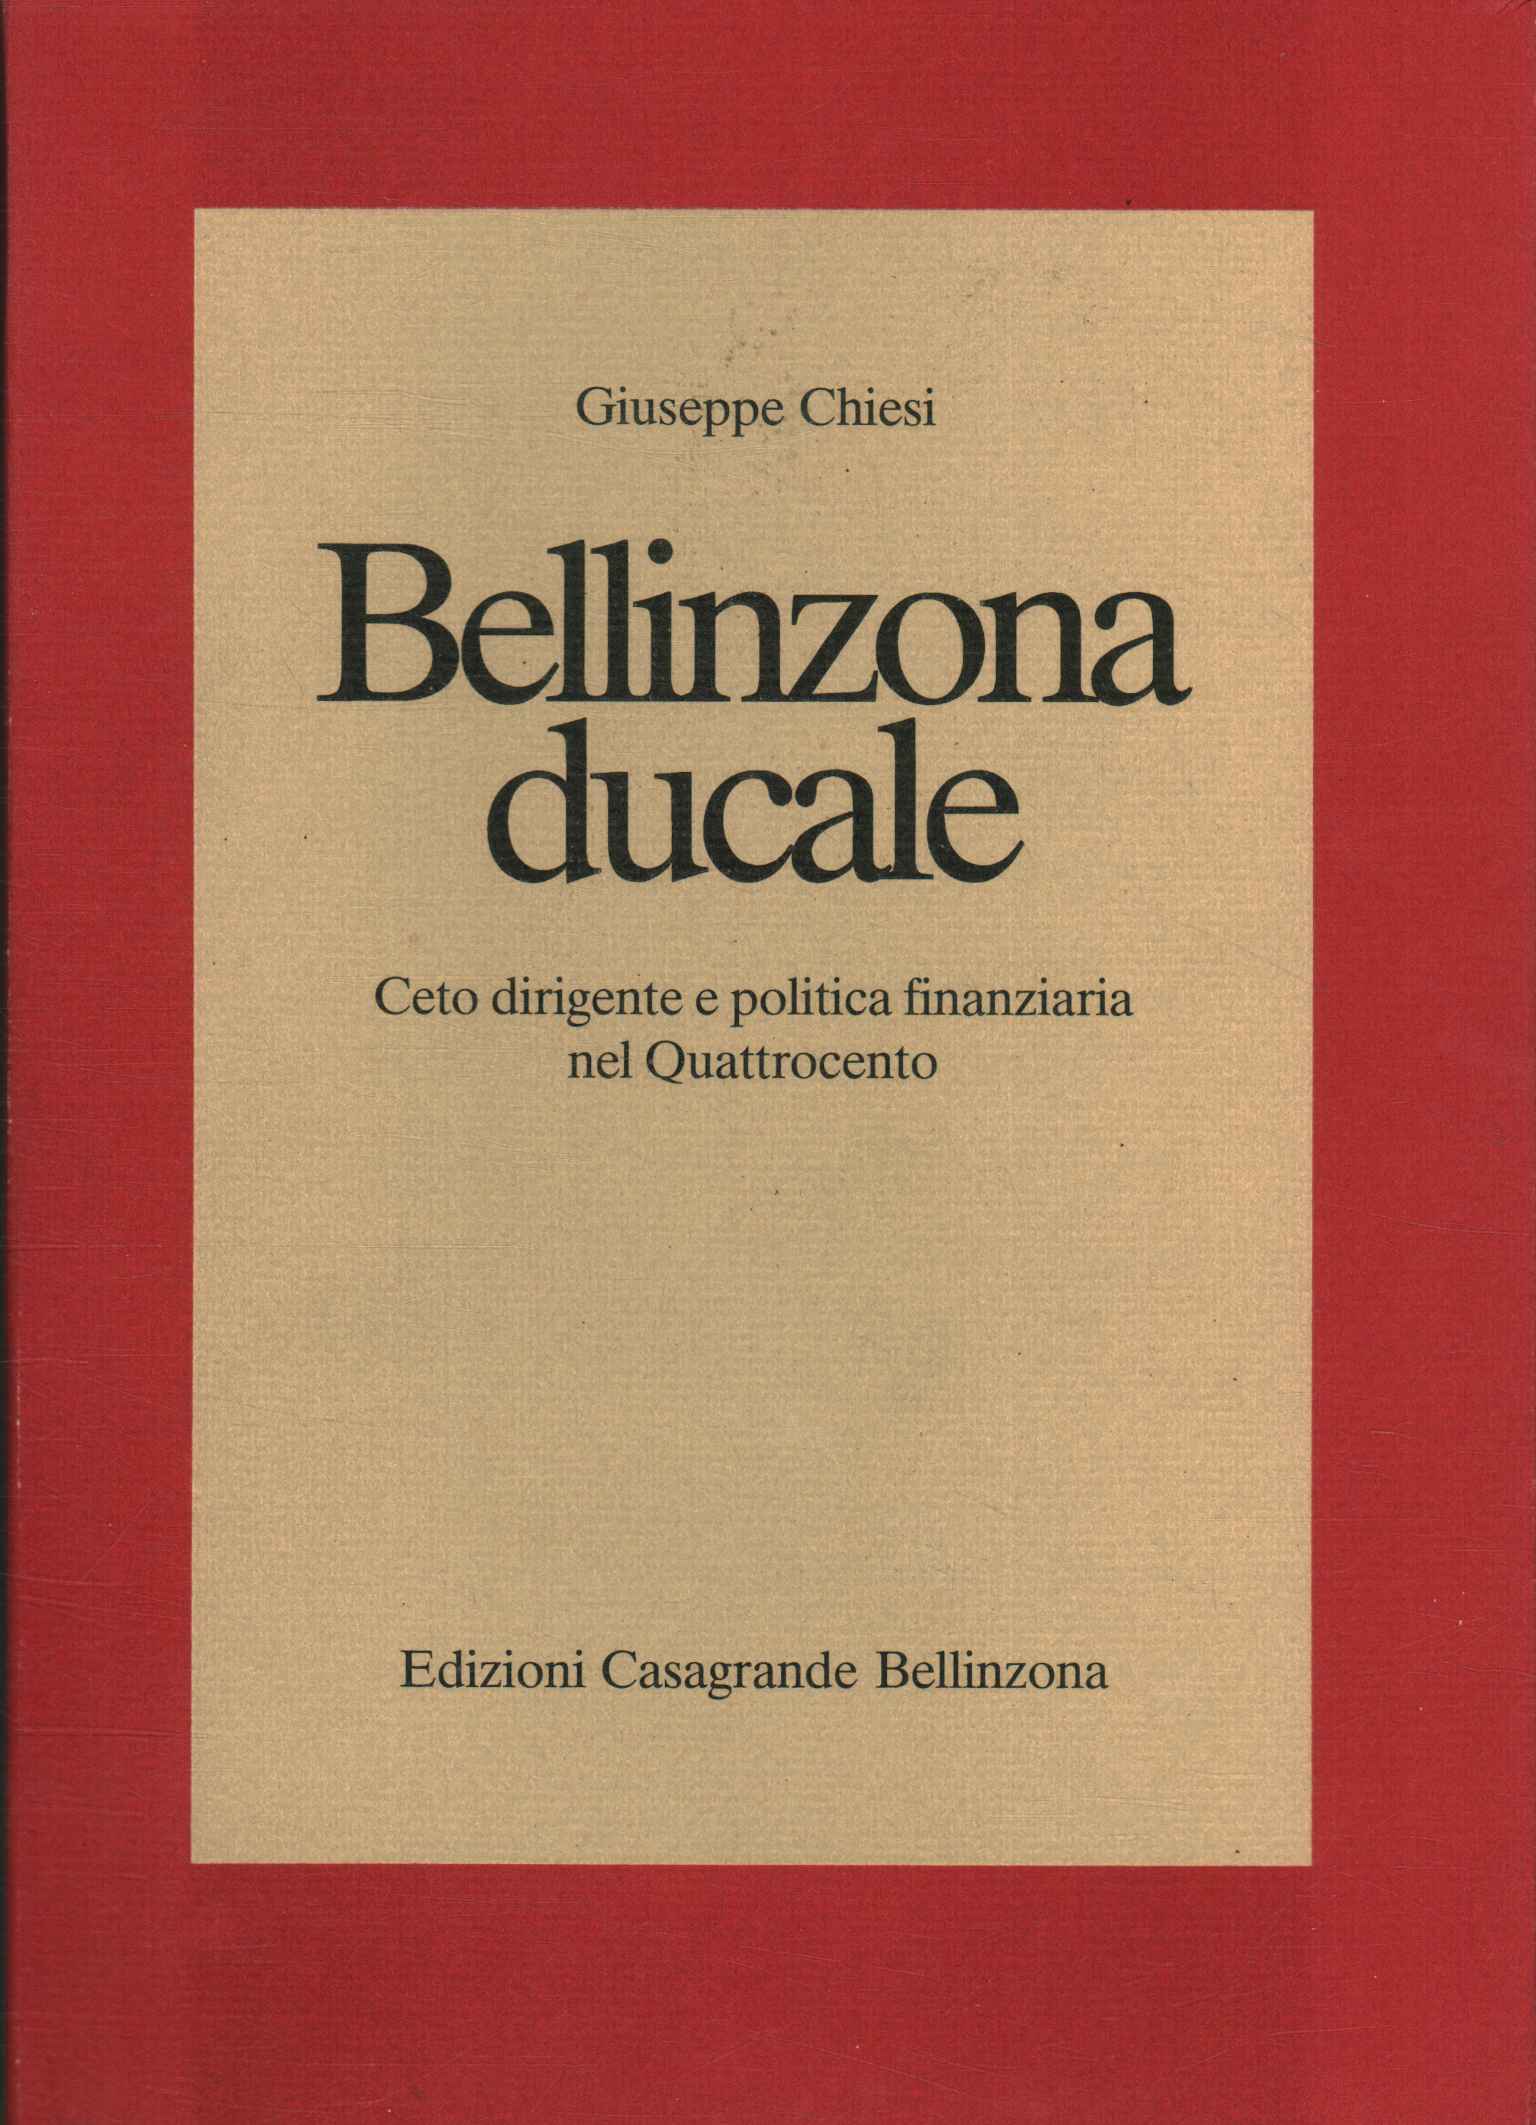 Ducal Bellinzona